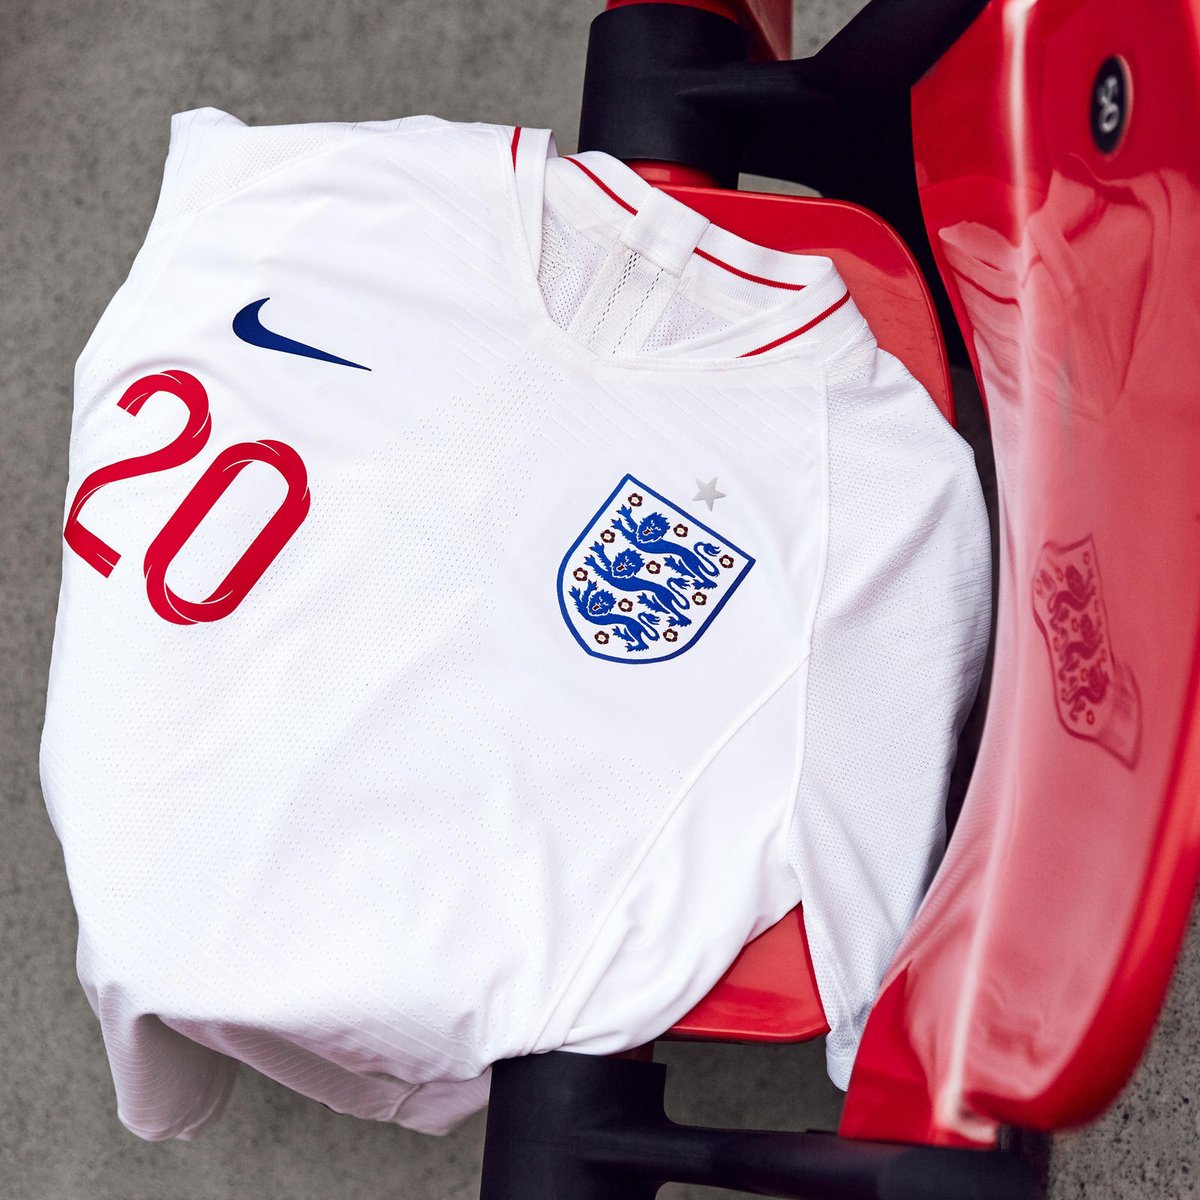 منتخب إنجلترا يكشف عن قميصه الجديد فى كأس العالم